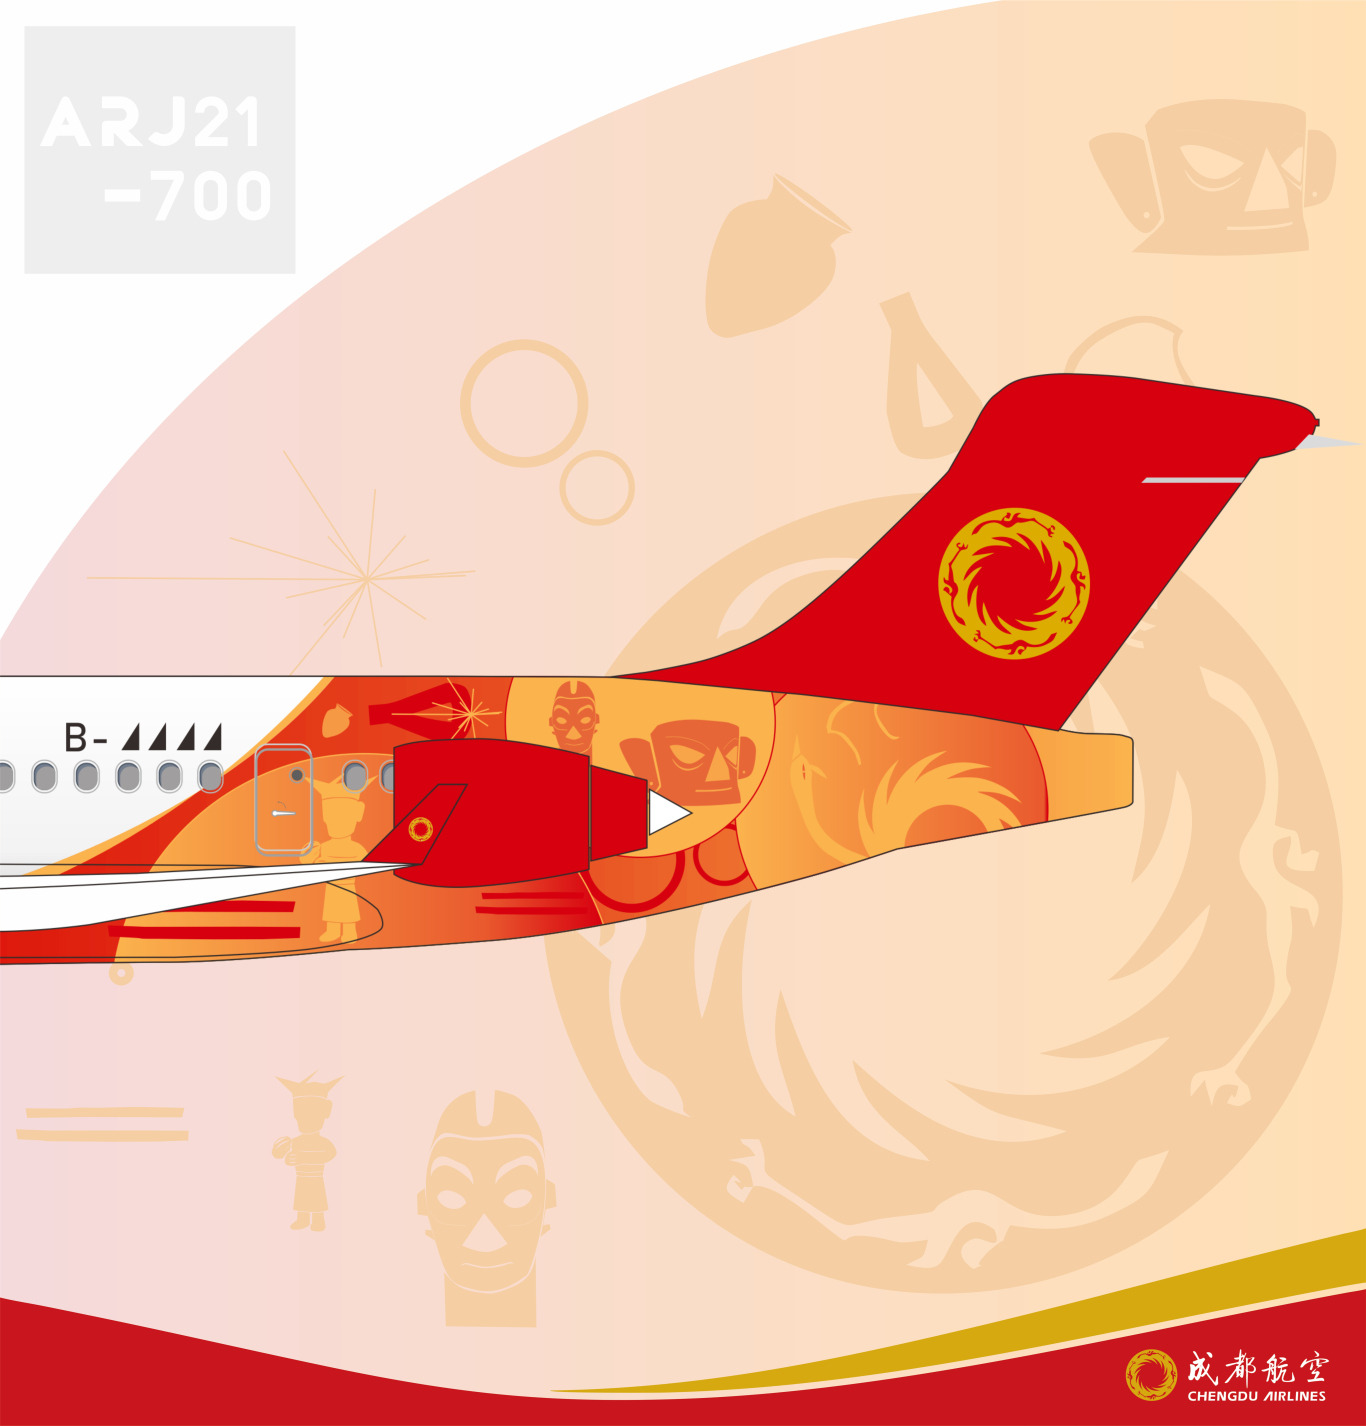 成都航空金沙號飛機涂裝設計圖2